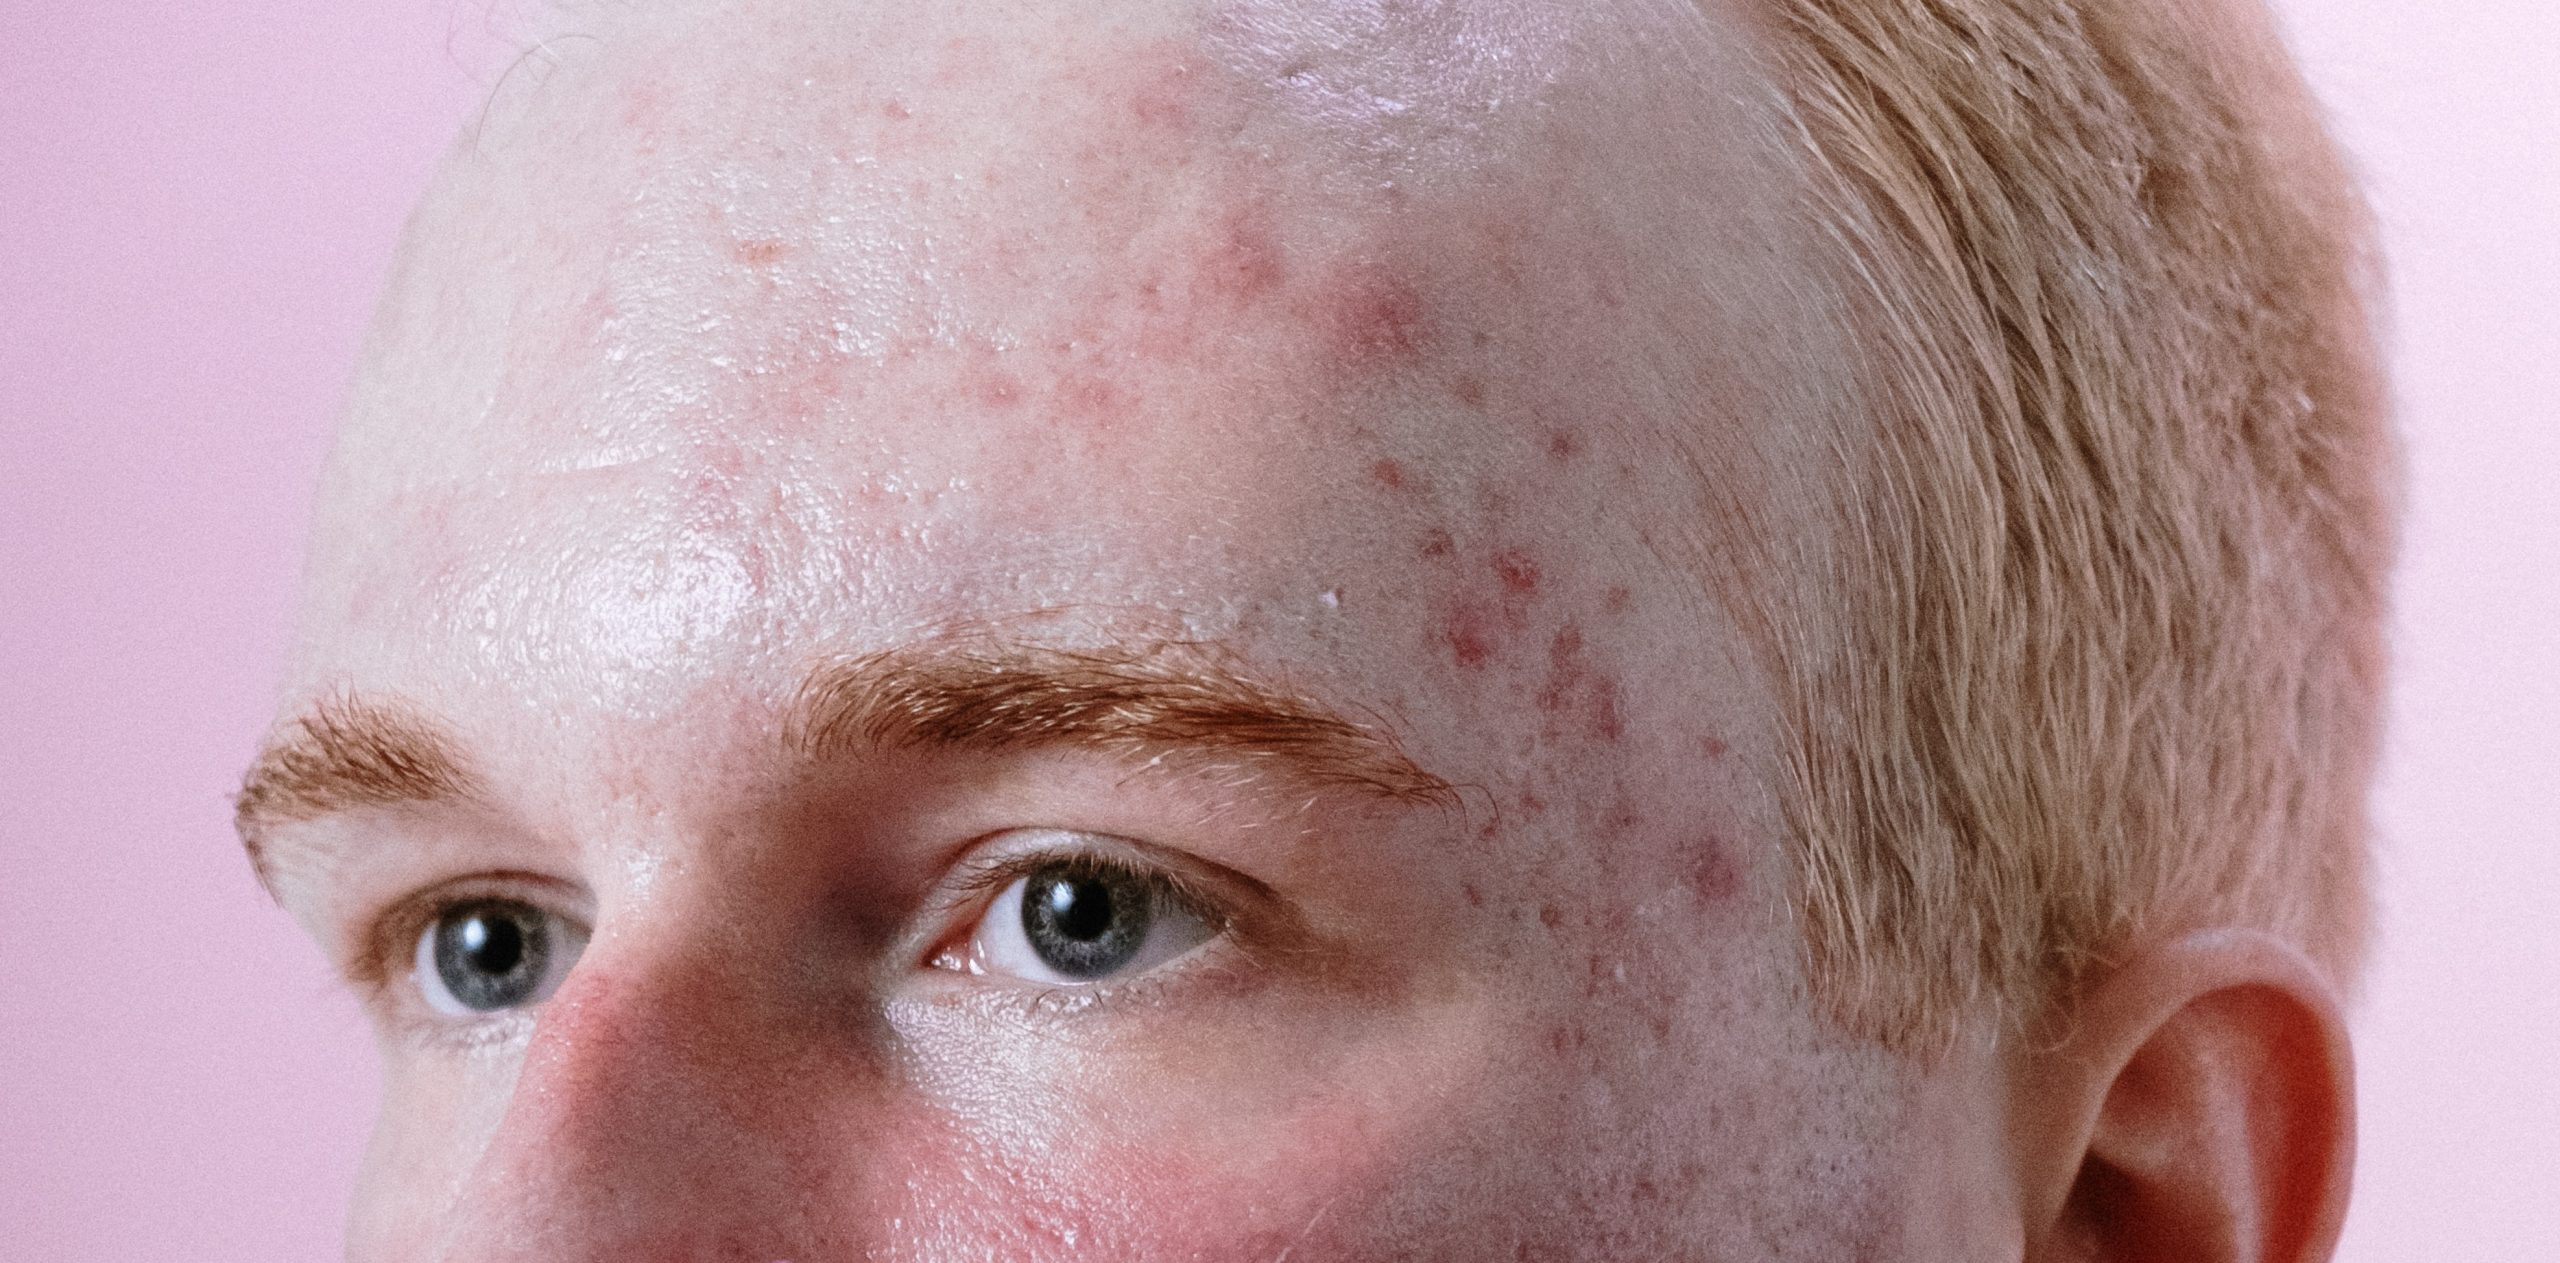 Seorang pria dengan post-inflammatory erythema (PIE) akibat jerawat. Sumber: pexels.com.